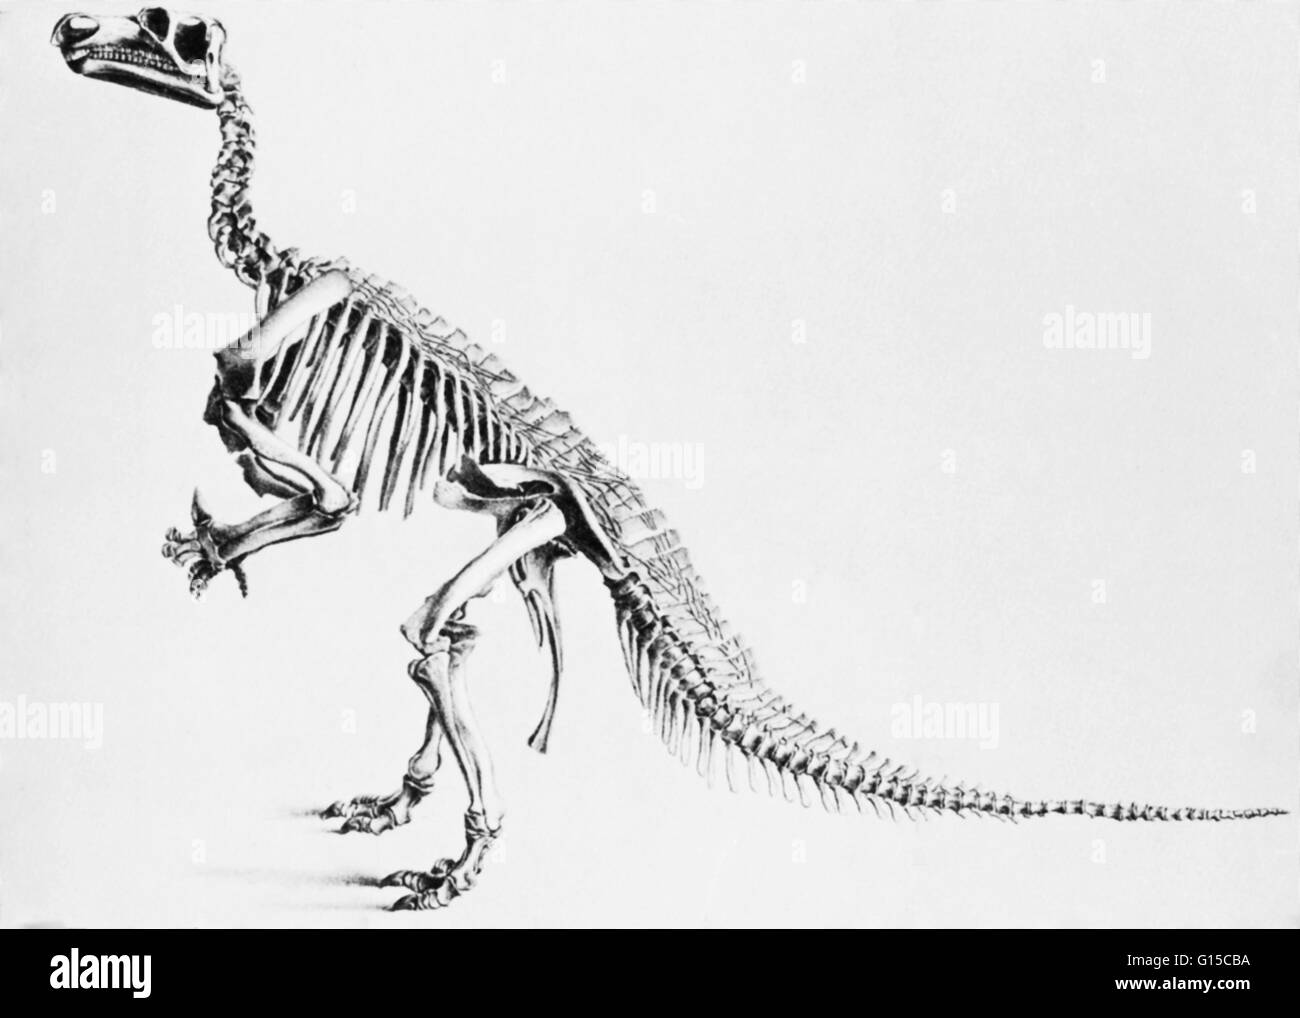 Die Wort Dinosaurier wurde von Richard Owen im Jahr 1841 Deinos (schrecklich) + Sauros (Eidechse), die beschreiben verschiedene ausgestorbene Reptilien der Ordnungen Saurischia und Ornithischia, die während der mesozoischen Ära blühte geprägt. Dinosaurier waren fleischfressende oder Pflanzenfresser, Stockfoto